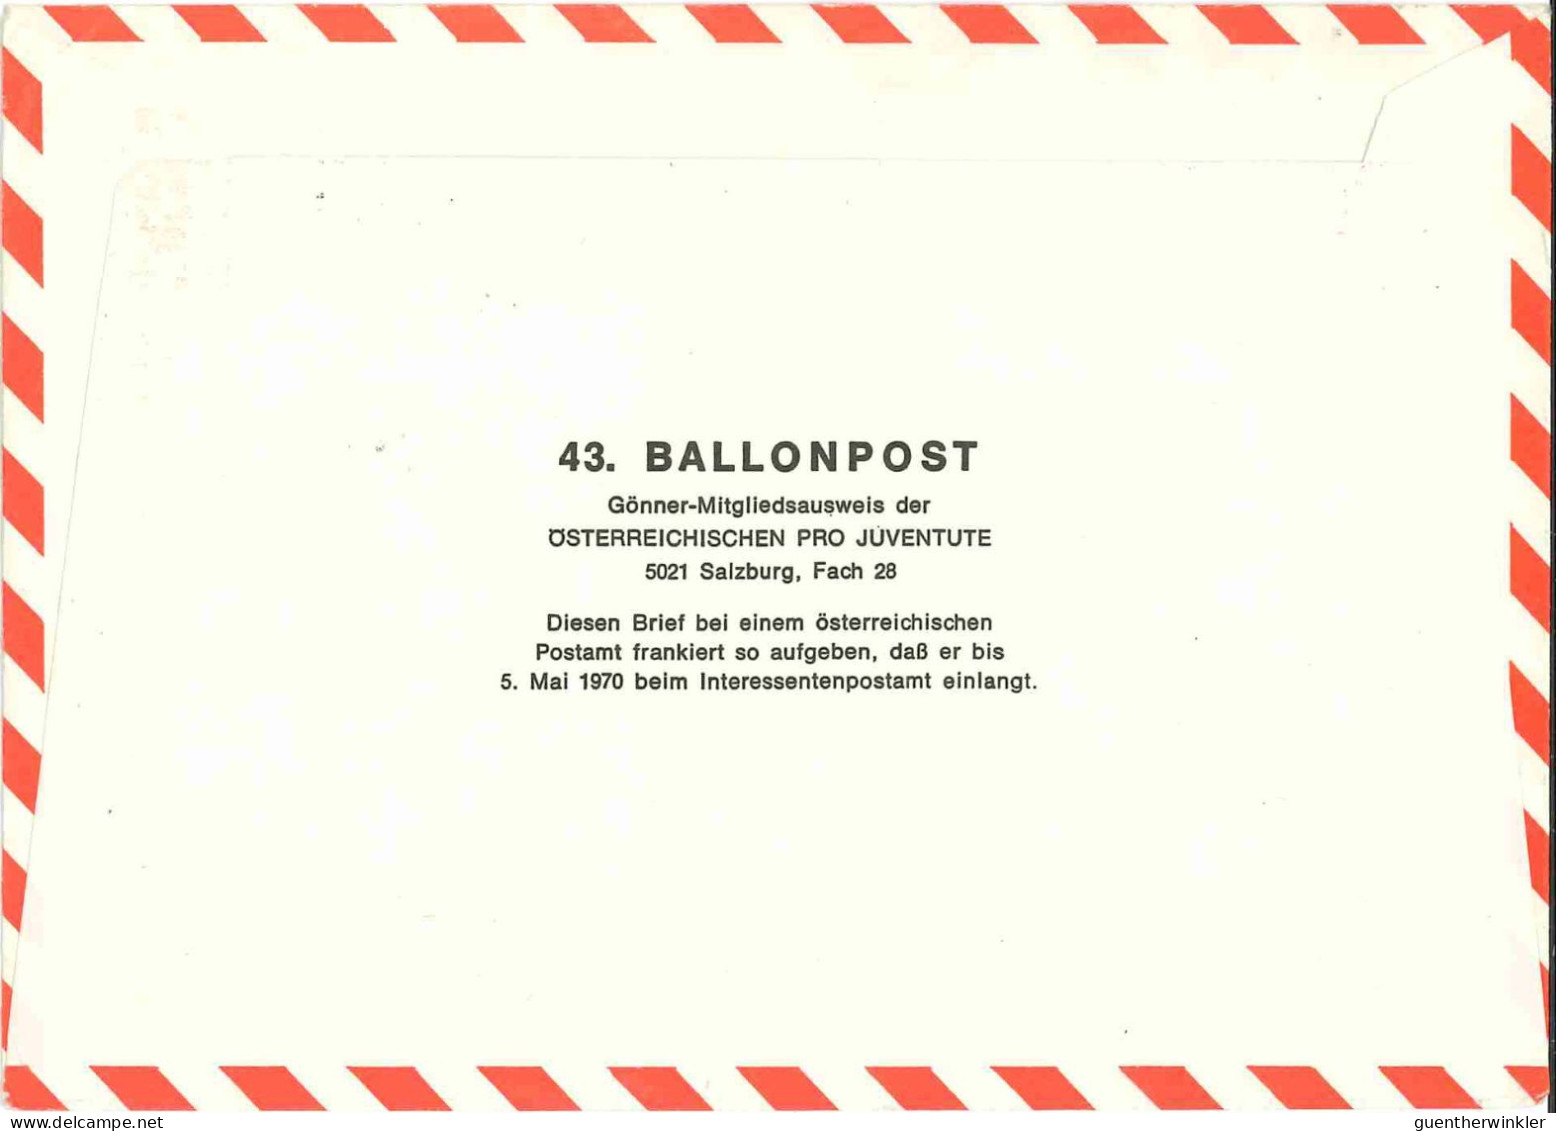 Regulärer Ballonpostflug Nr. 43a Der Pro Juventute [RBP43.] - Par Ballon